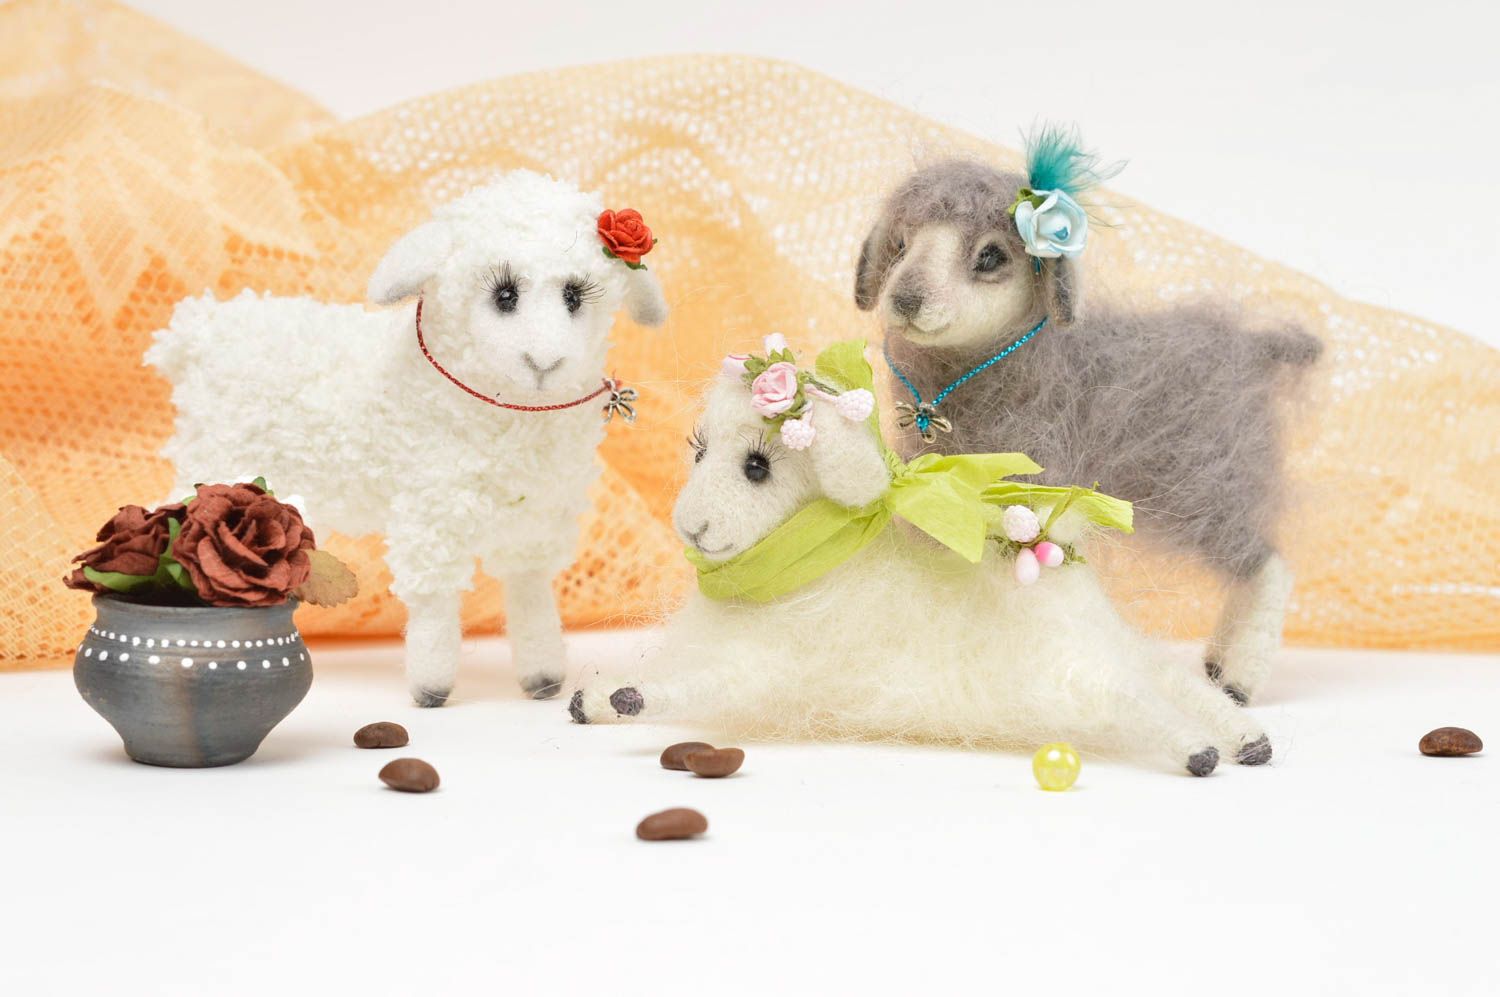 Handmade Spielzeug Set Stoff Tiere Geschenk Idee Kuschel Tiere Schafe schön foto 1